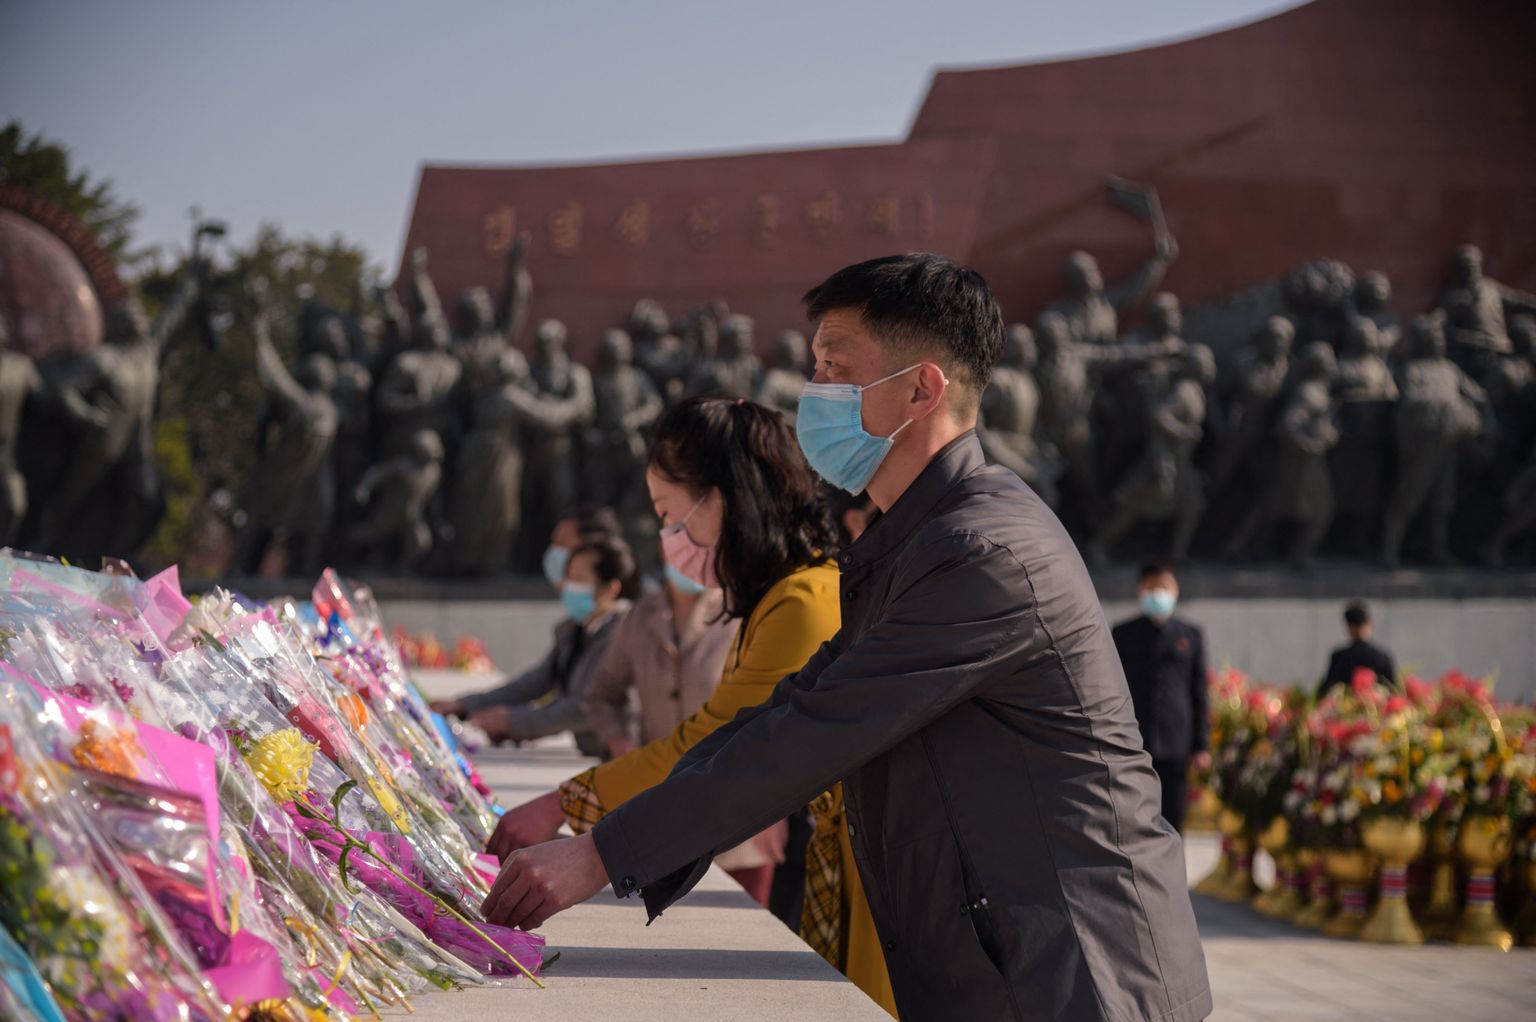 Inimesed asetamas Kim Il Sungi 109. sünnipäeval tema mälestusmärgi juurde lilli.